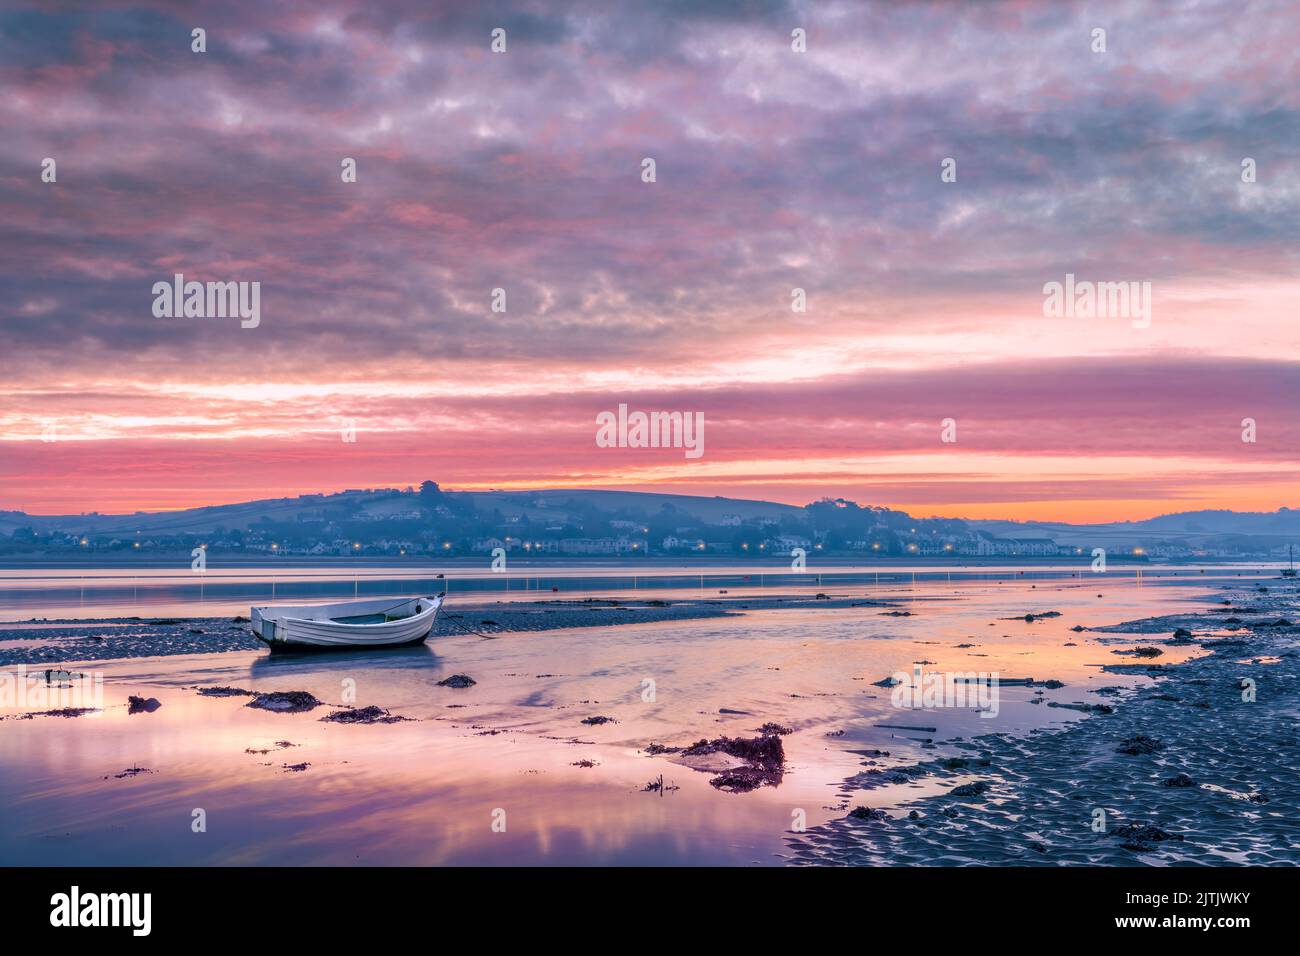 El cielo se refleja en el agua de la marea entrante mientras el amanecer rompe sobre la pequeña aldea costera de Instow en el norte de Devon, Inglaterra. Foto de stock